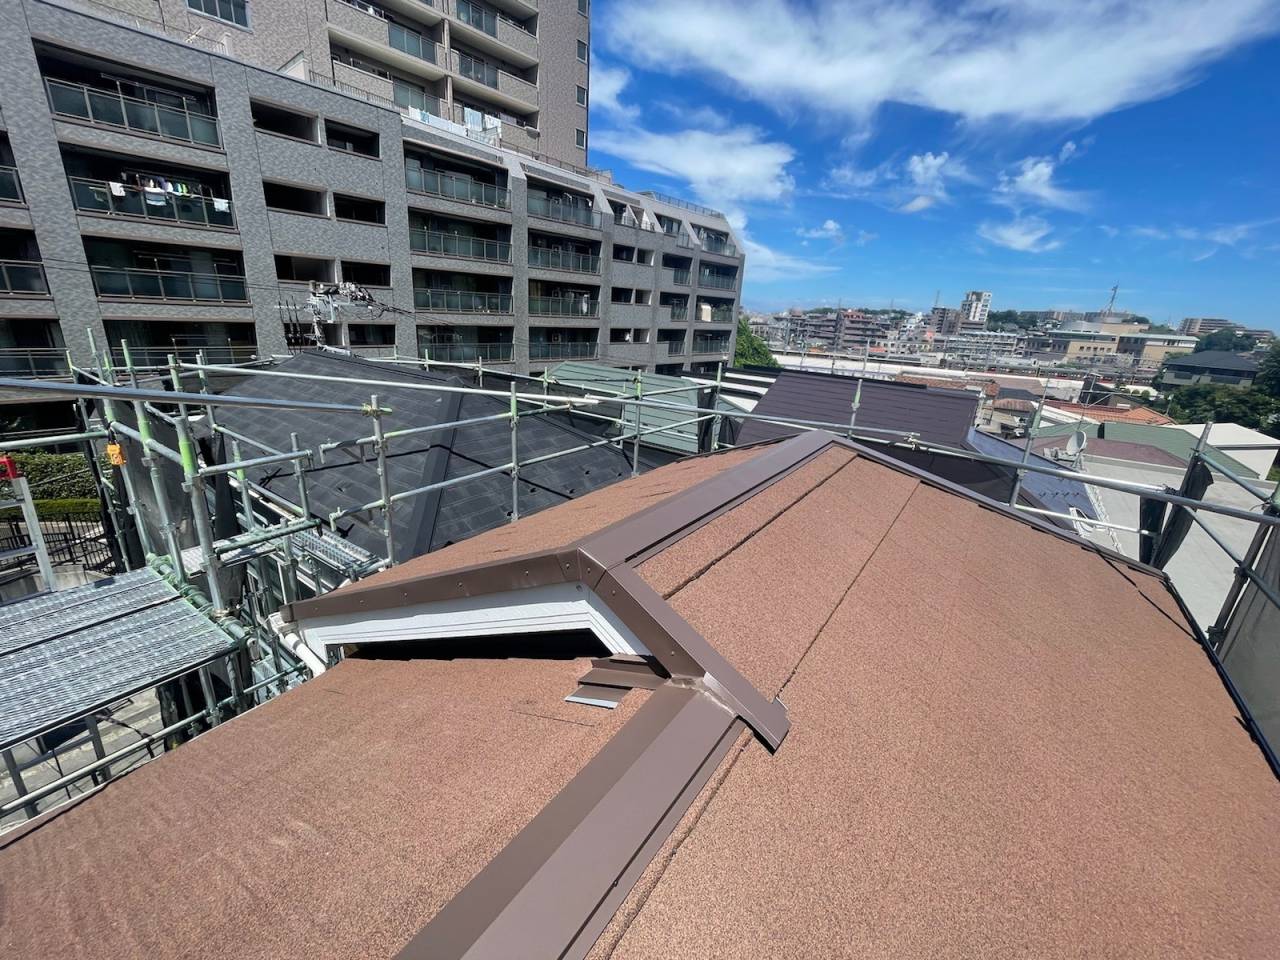 横浜市鶴見区で雨漏りに困ったら雨漏り相談所にご相談ください。屋根カバーの施工方法